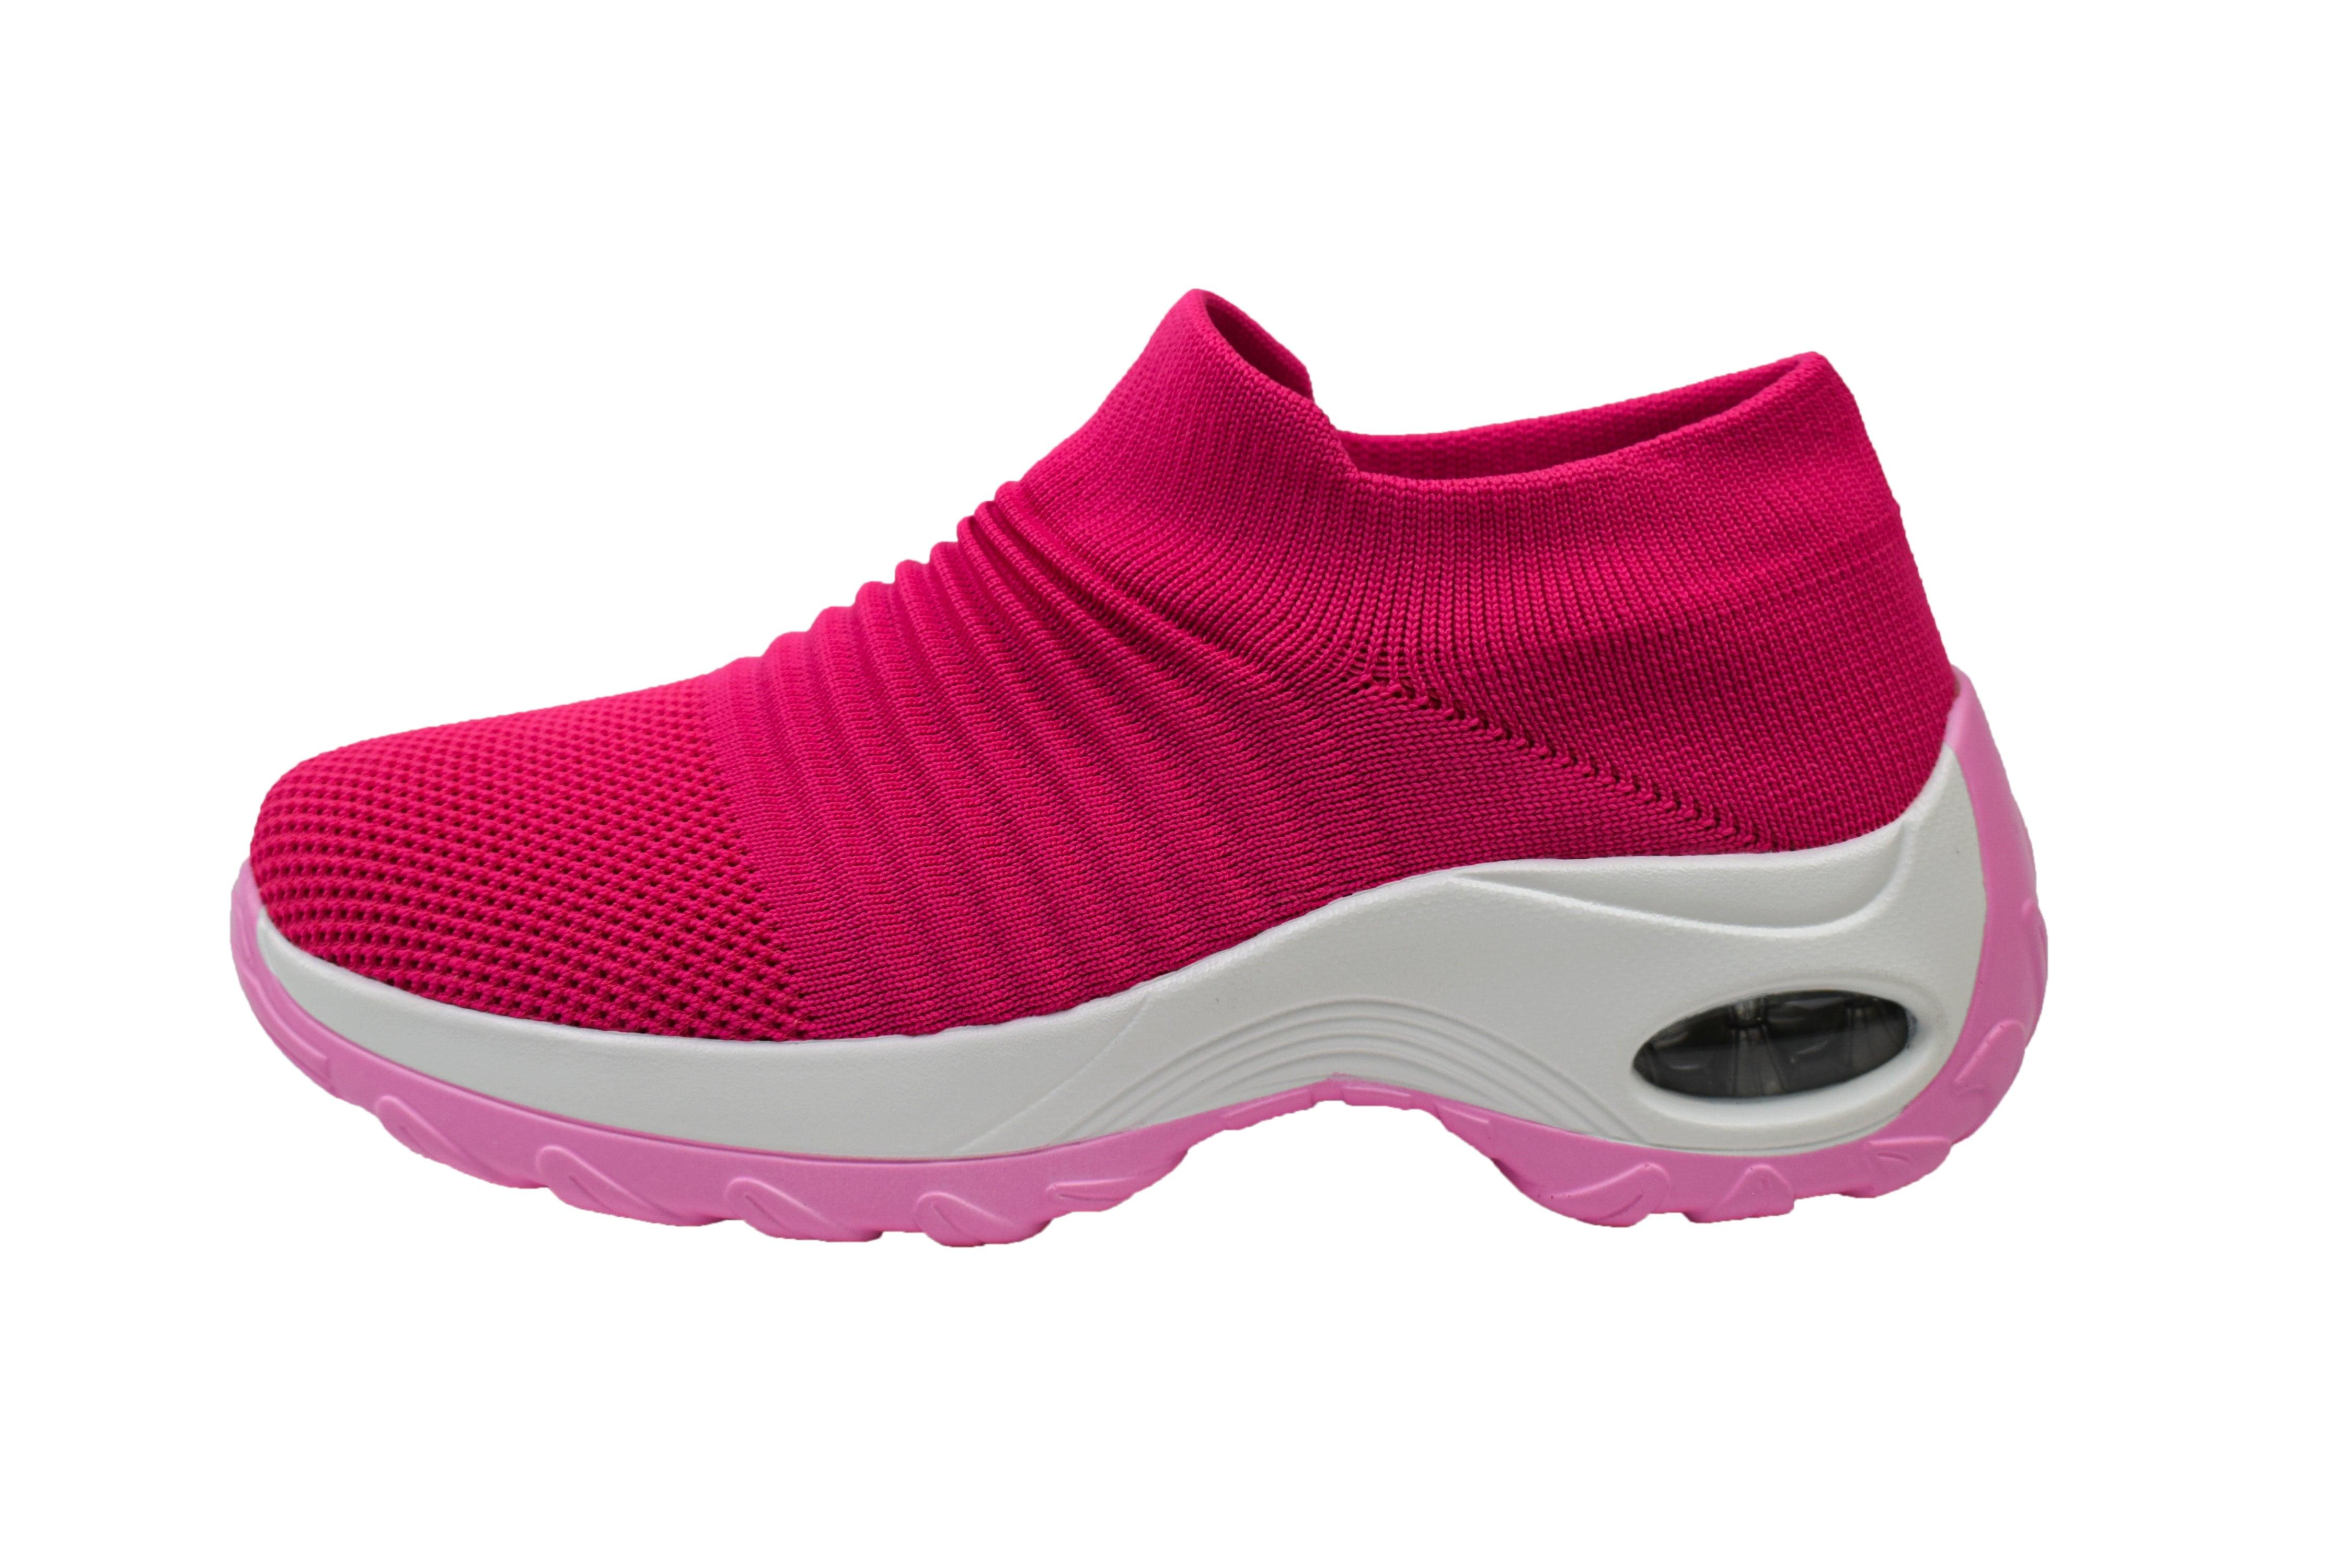 AdTec Women's Comfort Mesh Slip On Sneaker - Flyclothing LLC